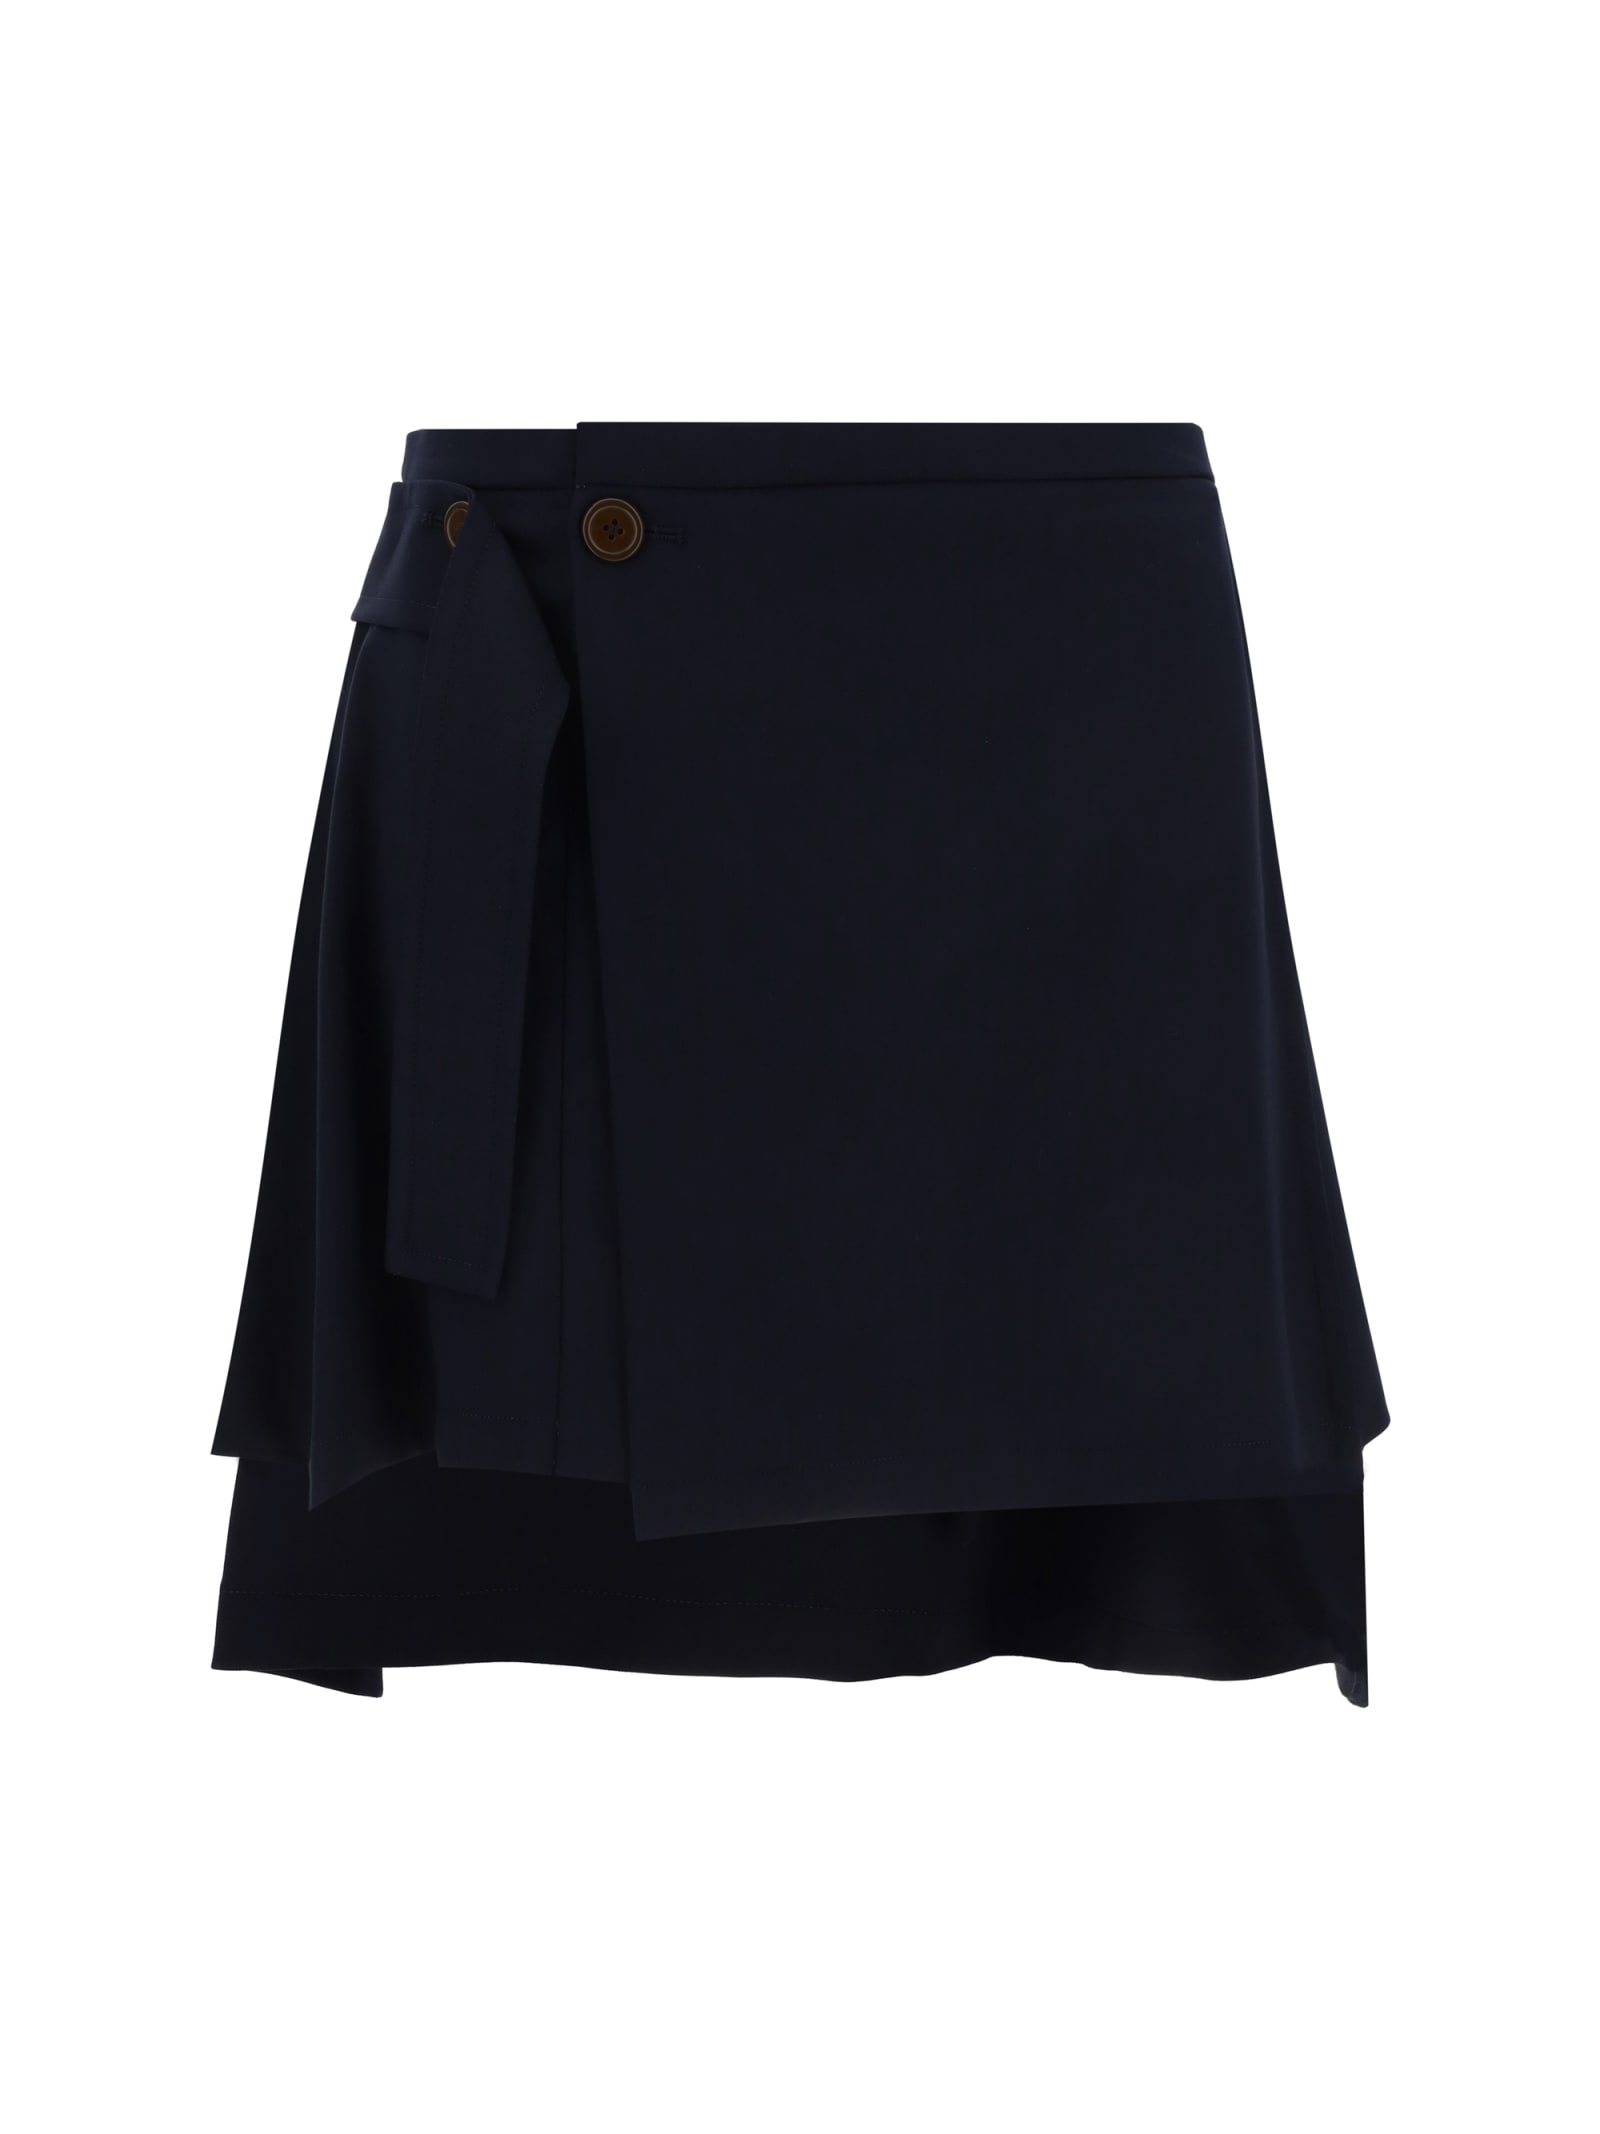 Vivienne Westwood Meghan Kilt Mini Skirt In Navy